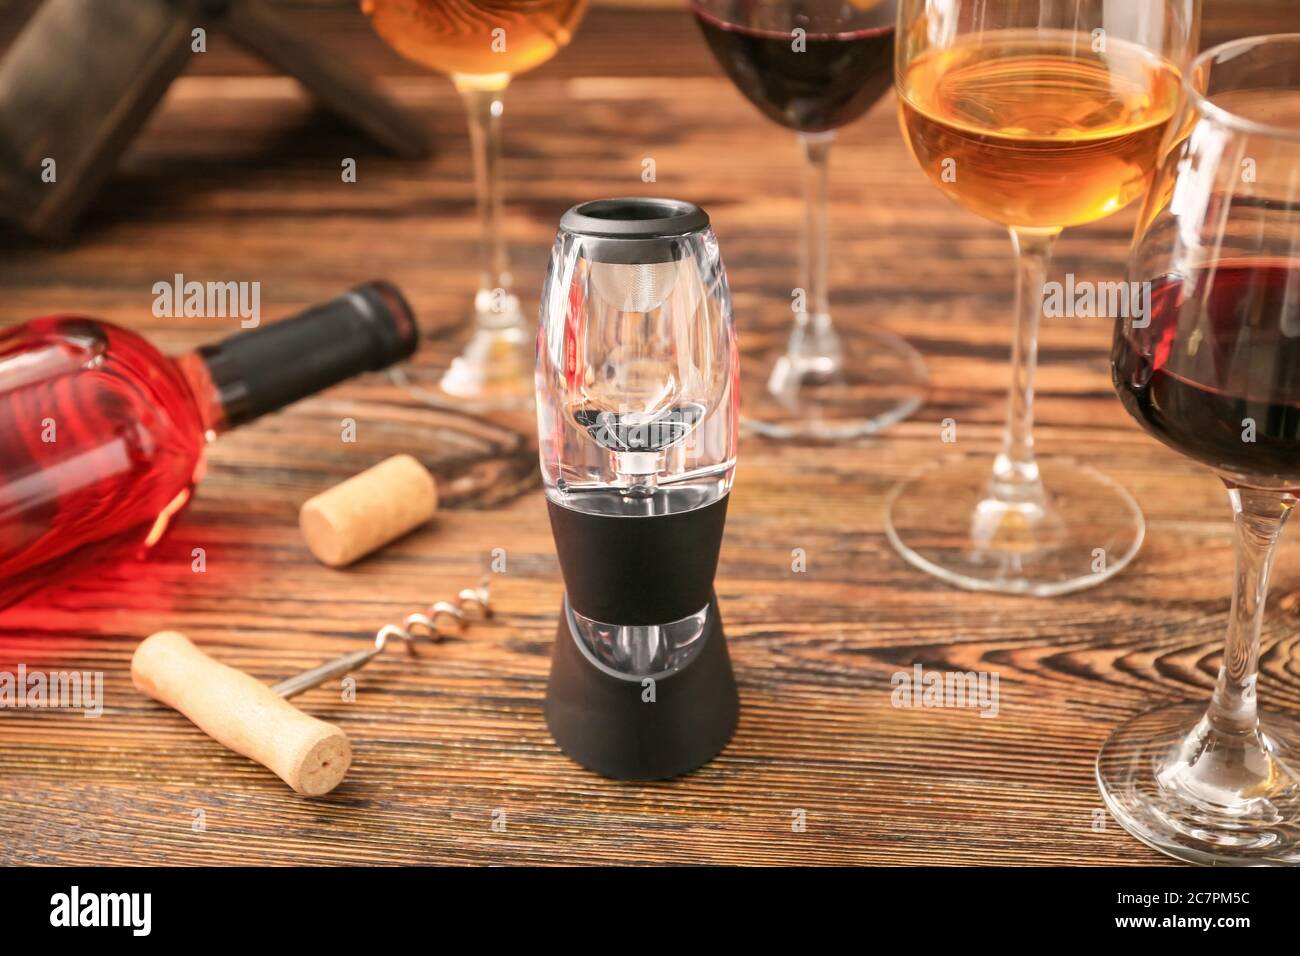 Aeratore per vino con bottiglia e bicchieri su fondo di legno Foto